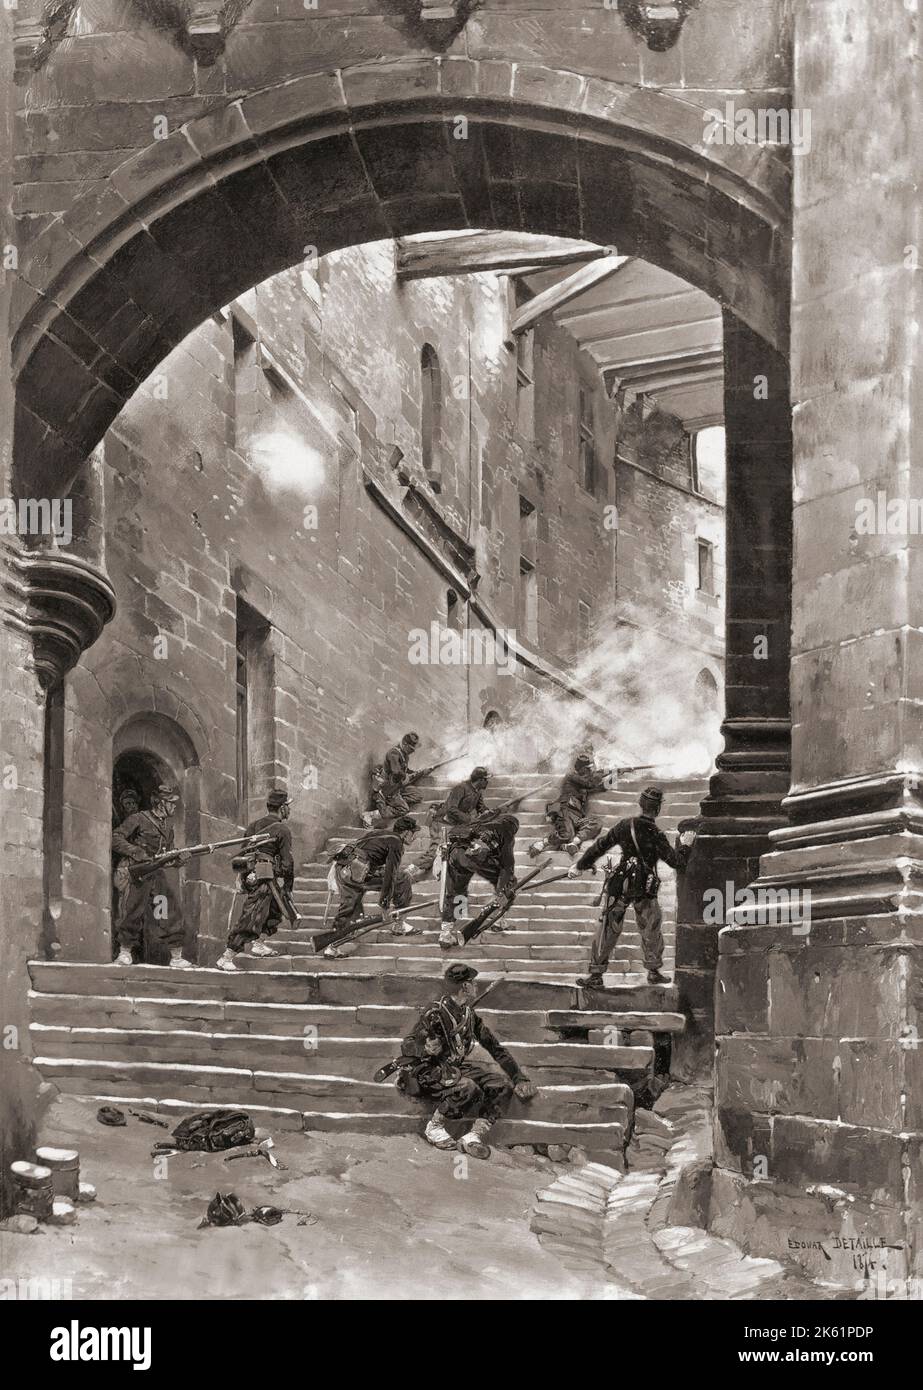 Französische Soldaten im Kampf in einem Schloss während des französisch-preußischen Krieges von 1870. Nach einem Gemälde von Edouard Detaille. Stockfoto